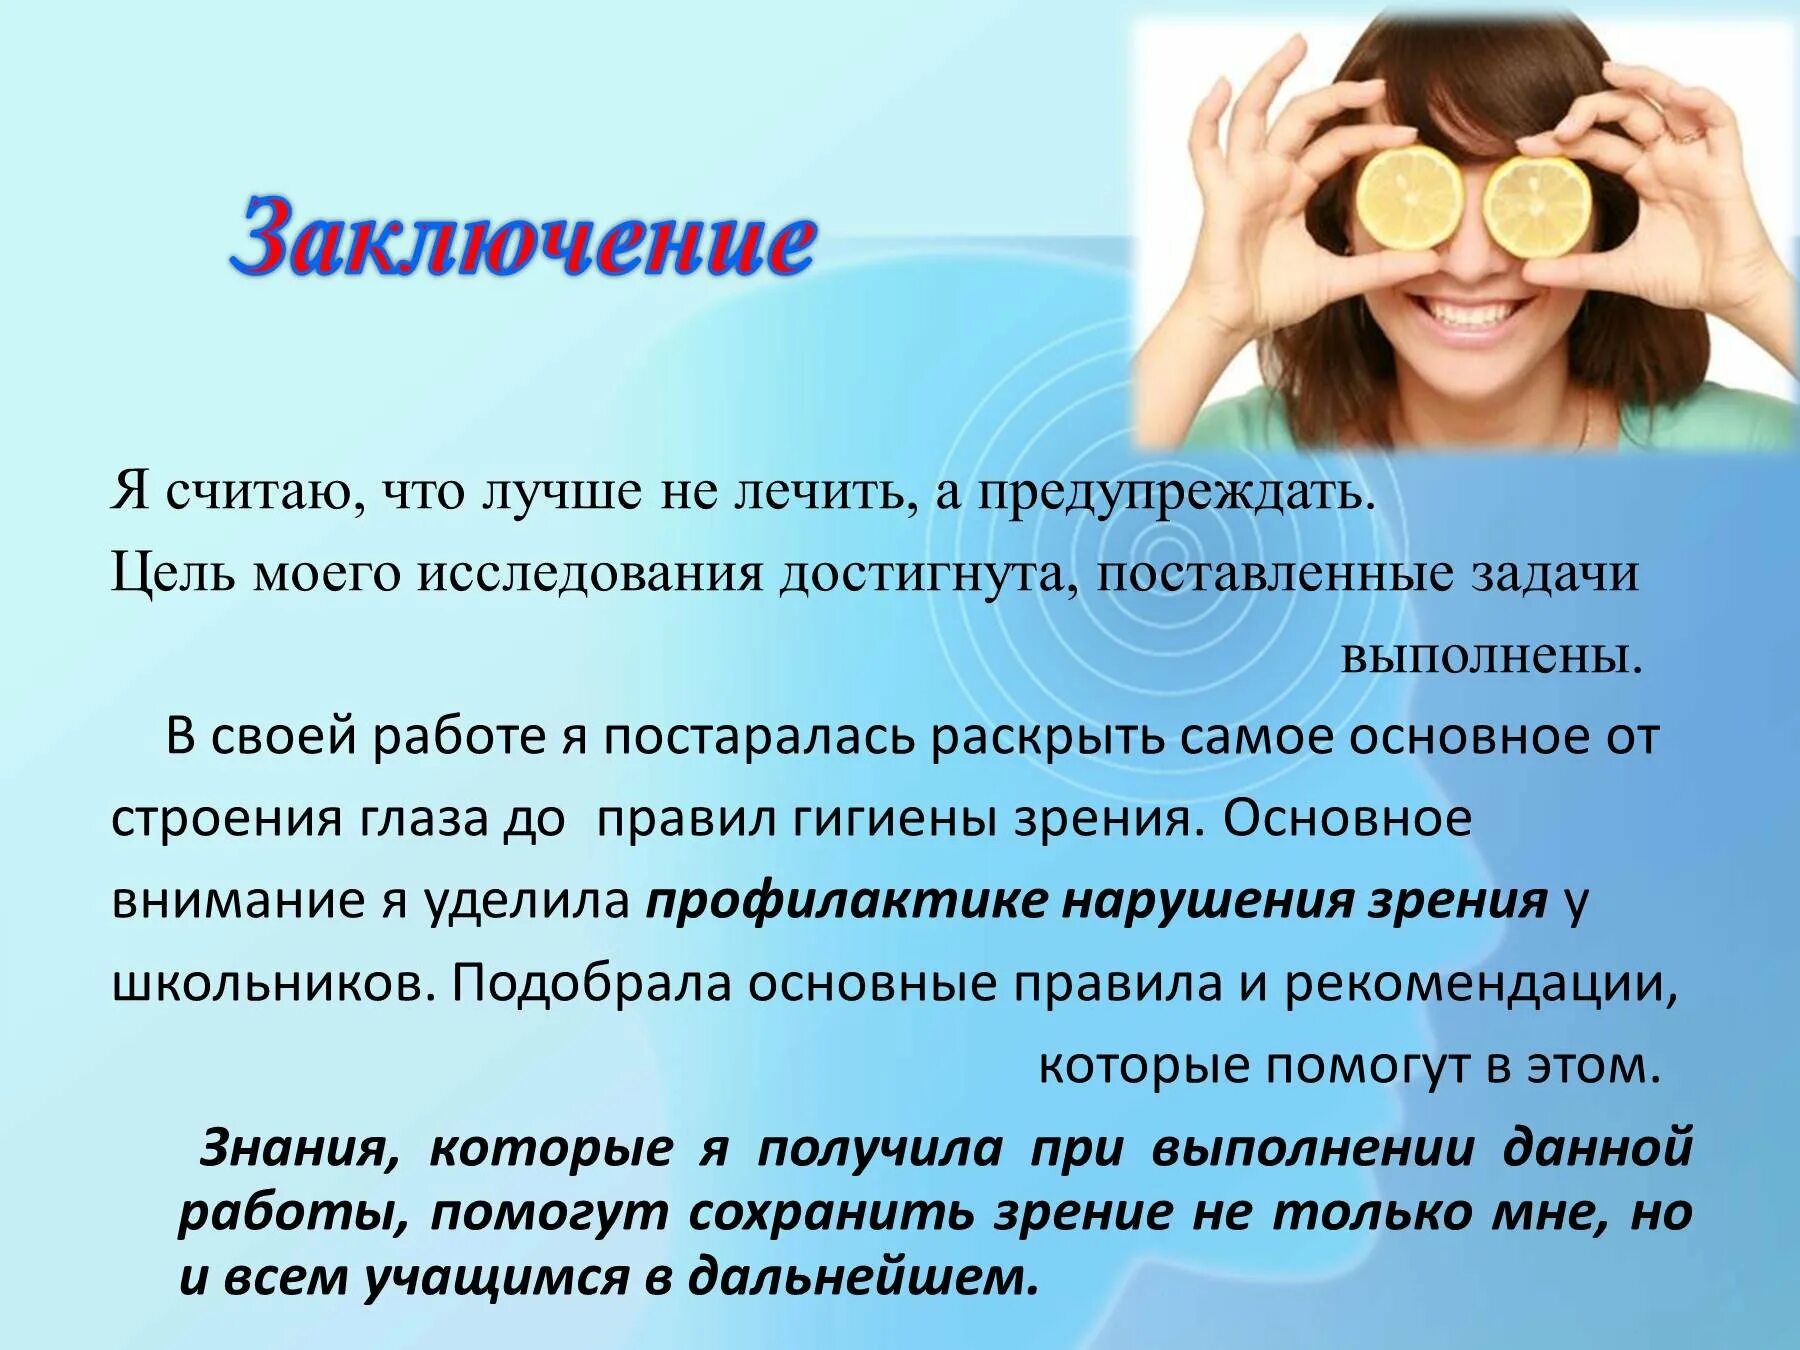 Нарушение зрения у школьников. Методы профилактики зрения. Профилактика нарушения зрения. Профилактика для зрения глаз.